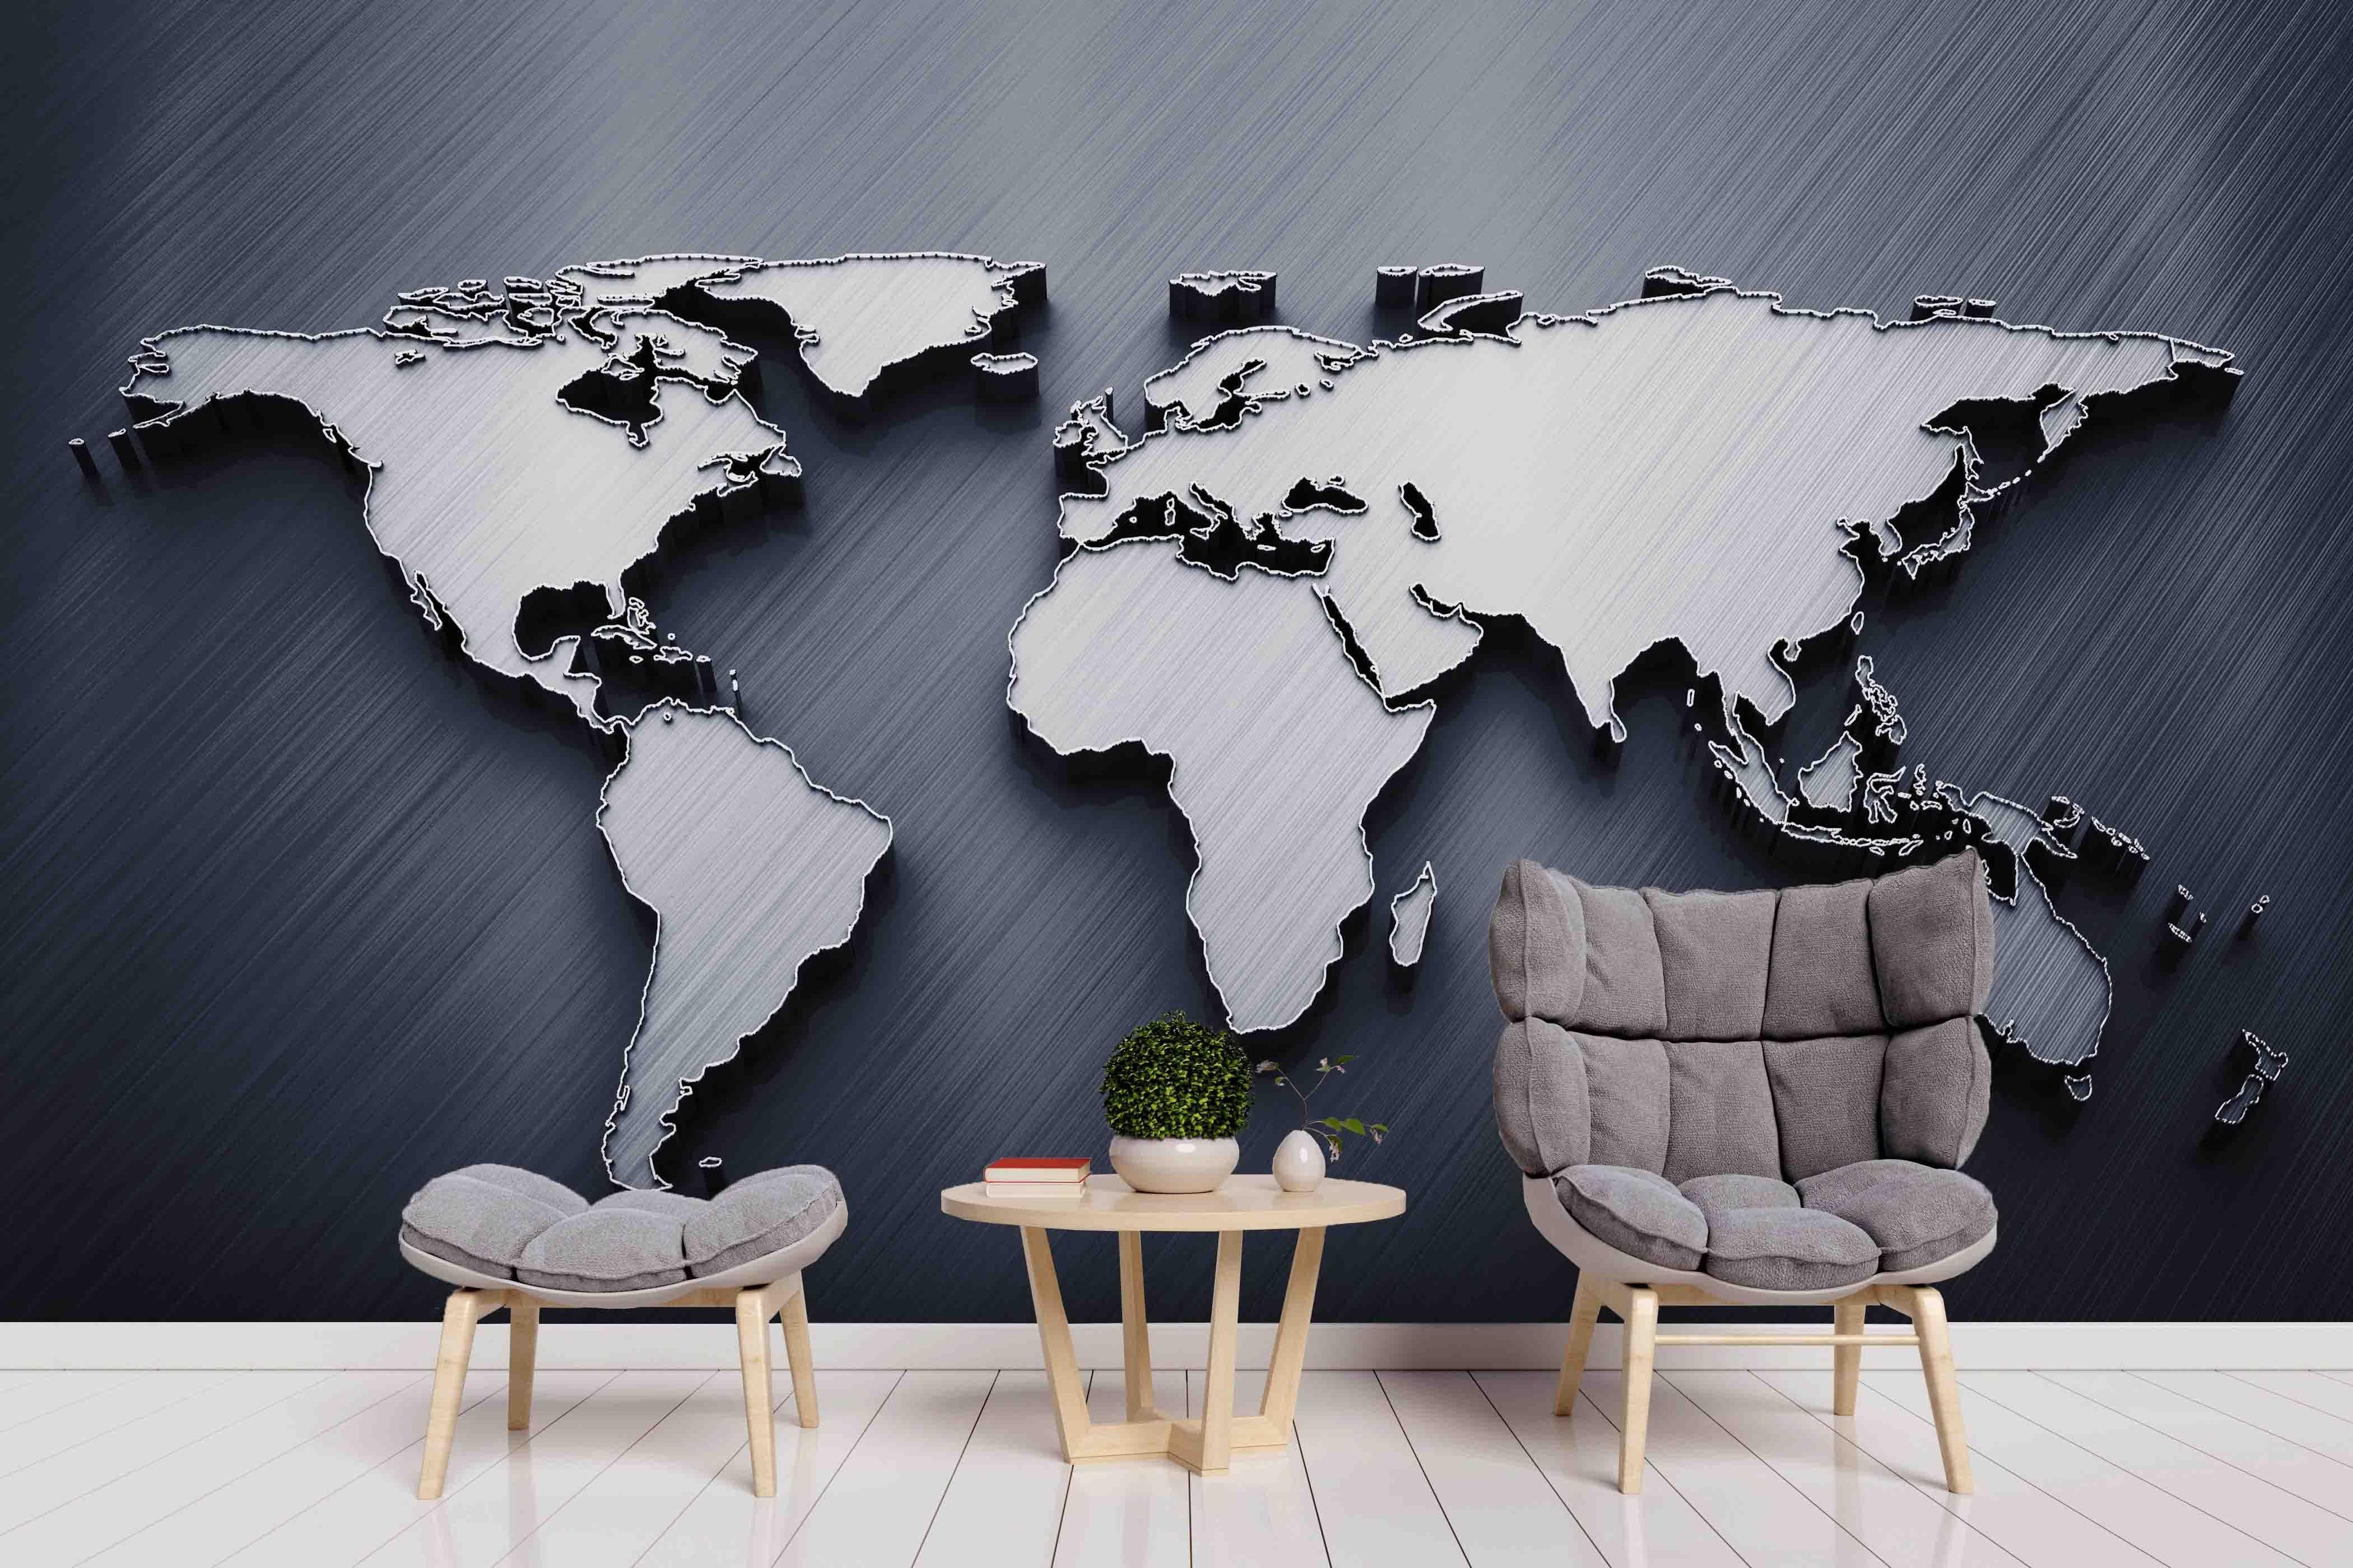 3D Grey Stereoscopic World Map Wall Mural Wallpaper A280 LQH- Jess Art Decoration